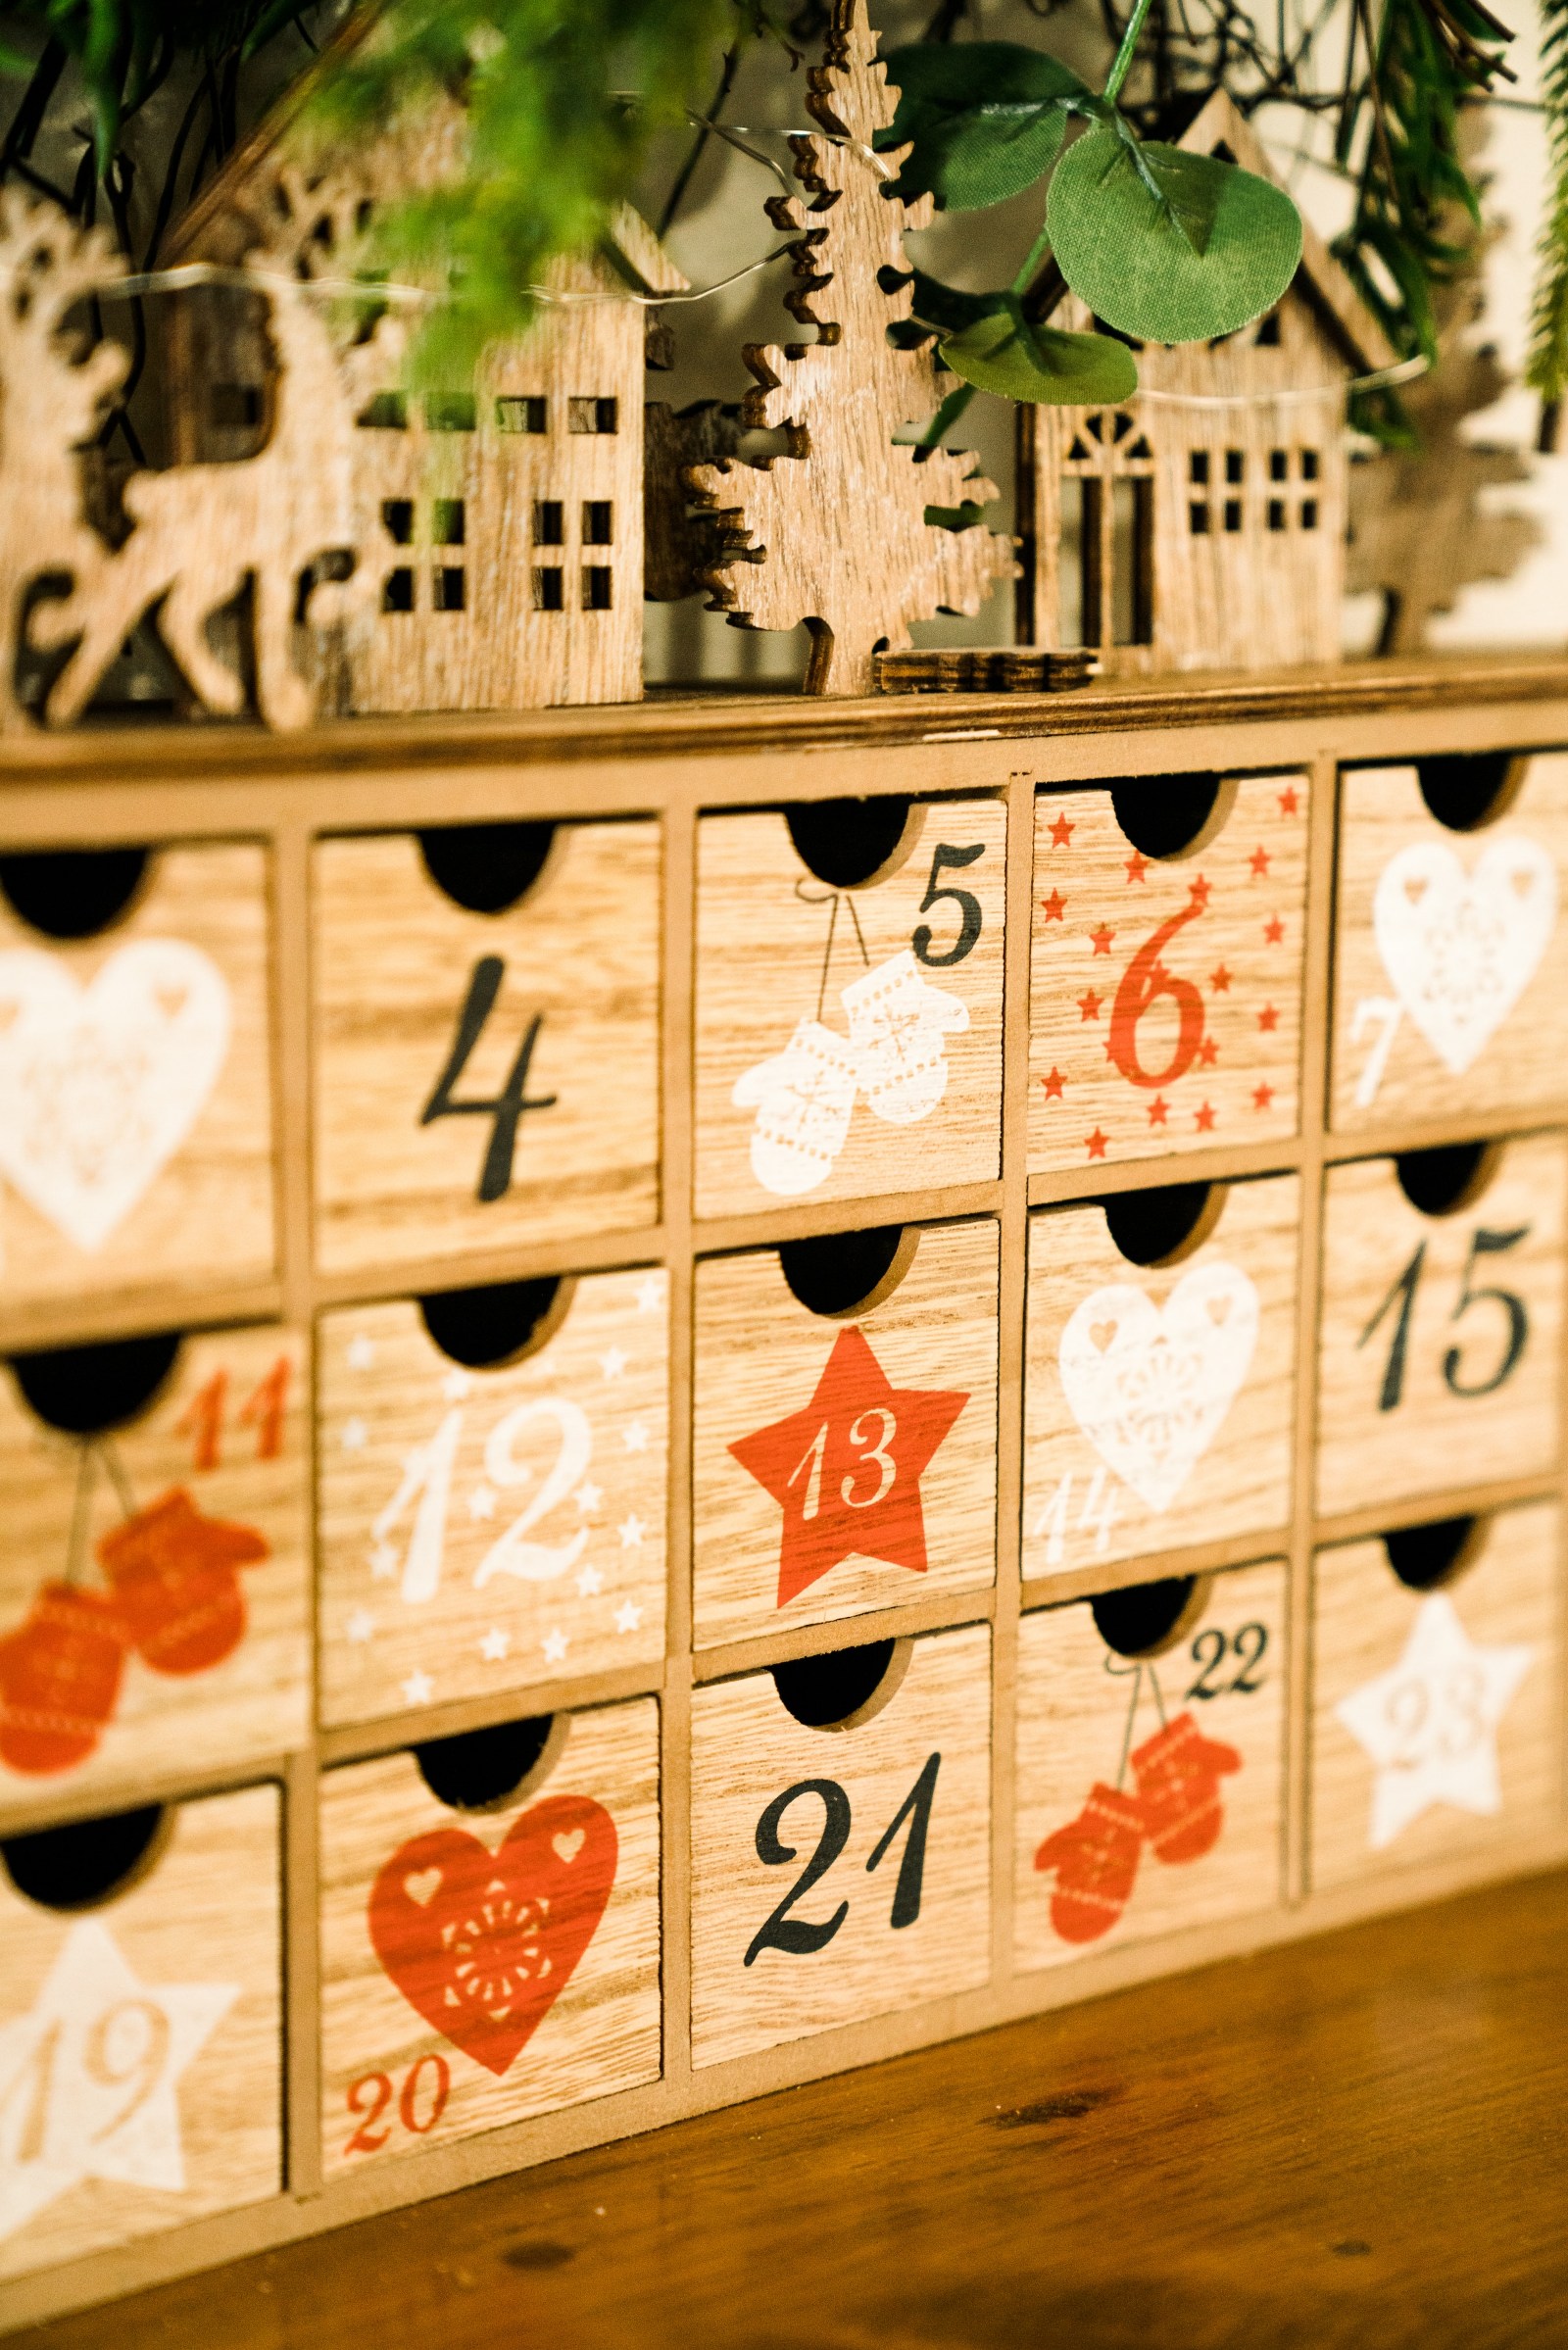 A wooden advent calendar.